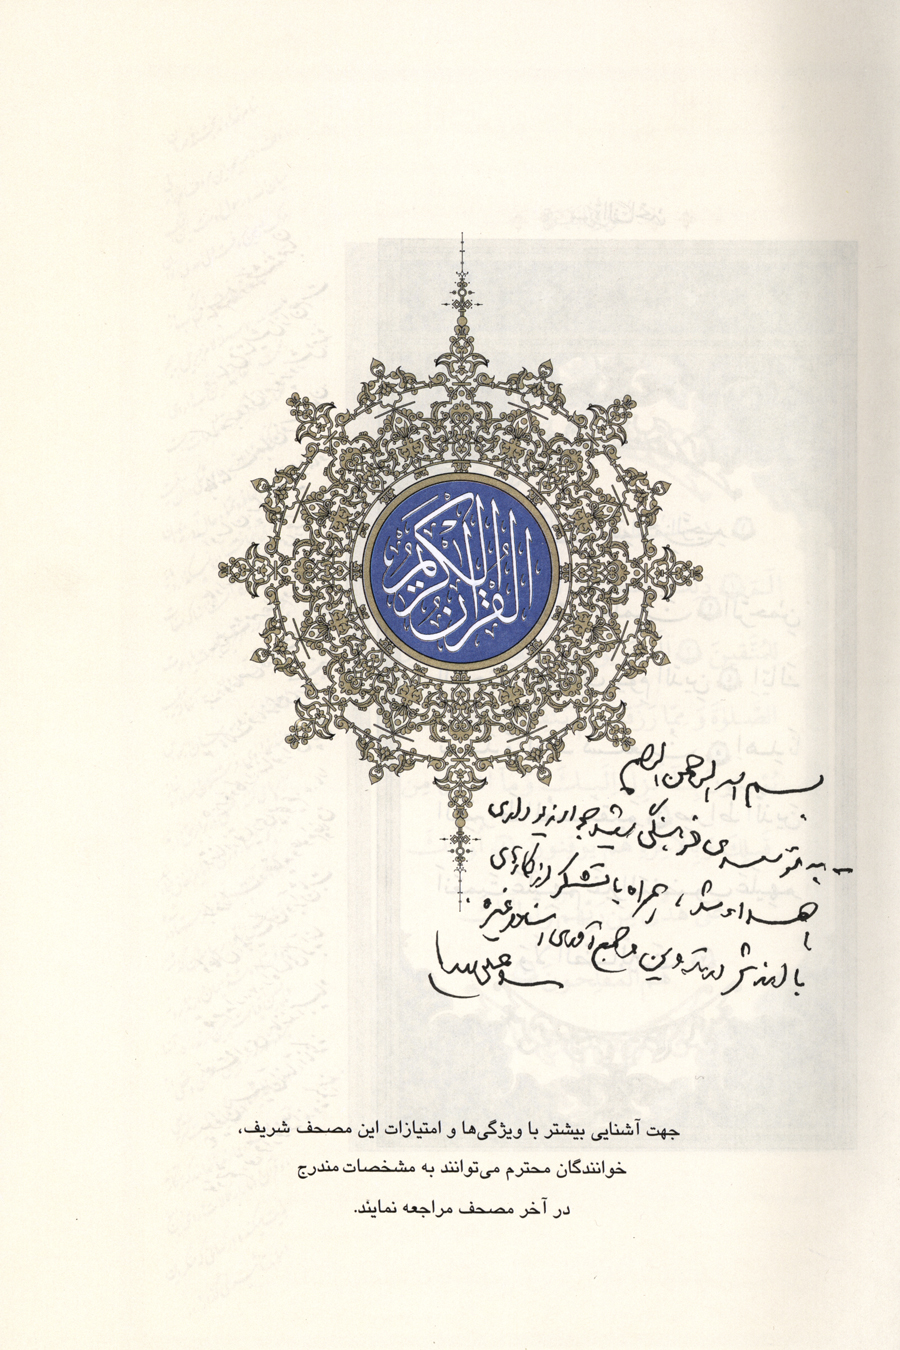 یادداشت رهبر انقلاب در ابتدای قرآن اهدایی به مؤسسه فرهنگی شهید جواد زیوداری